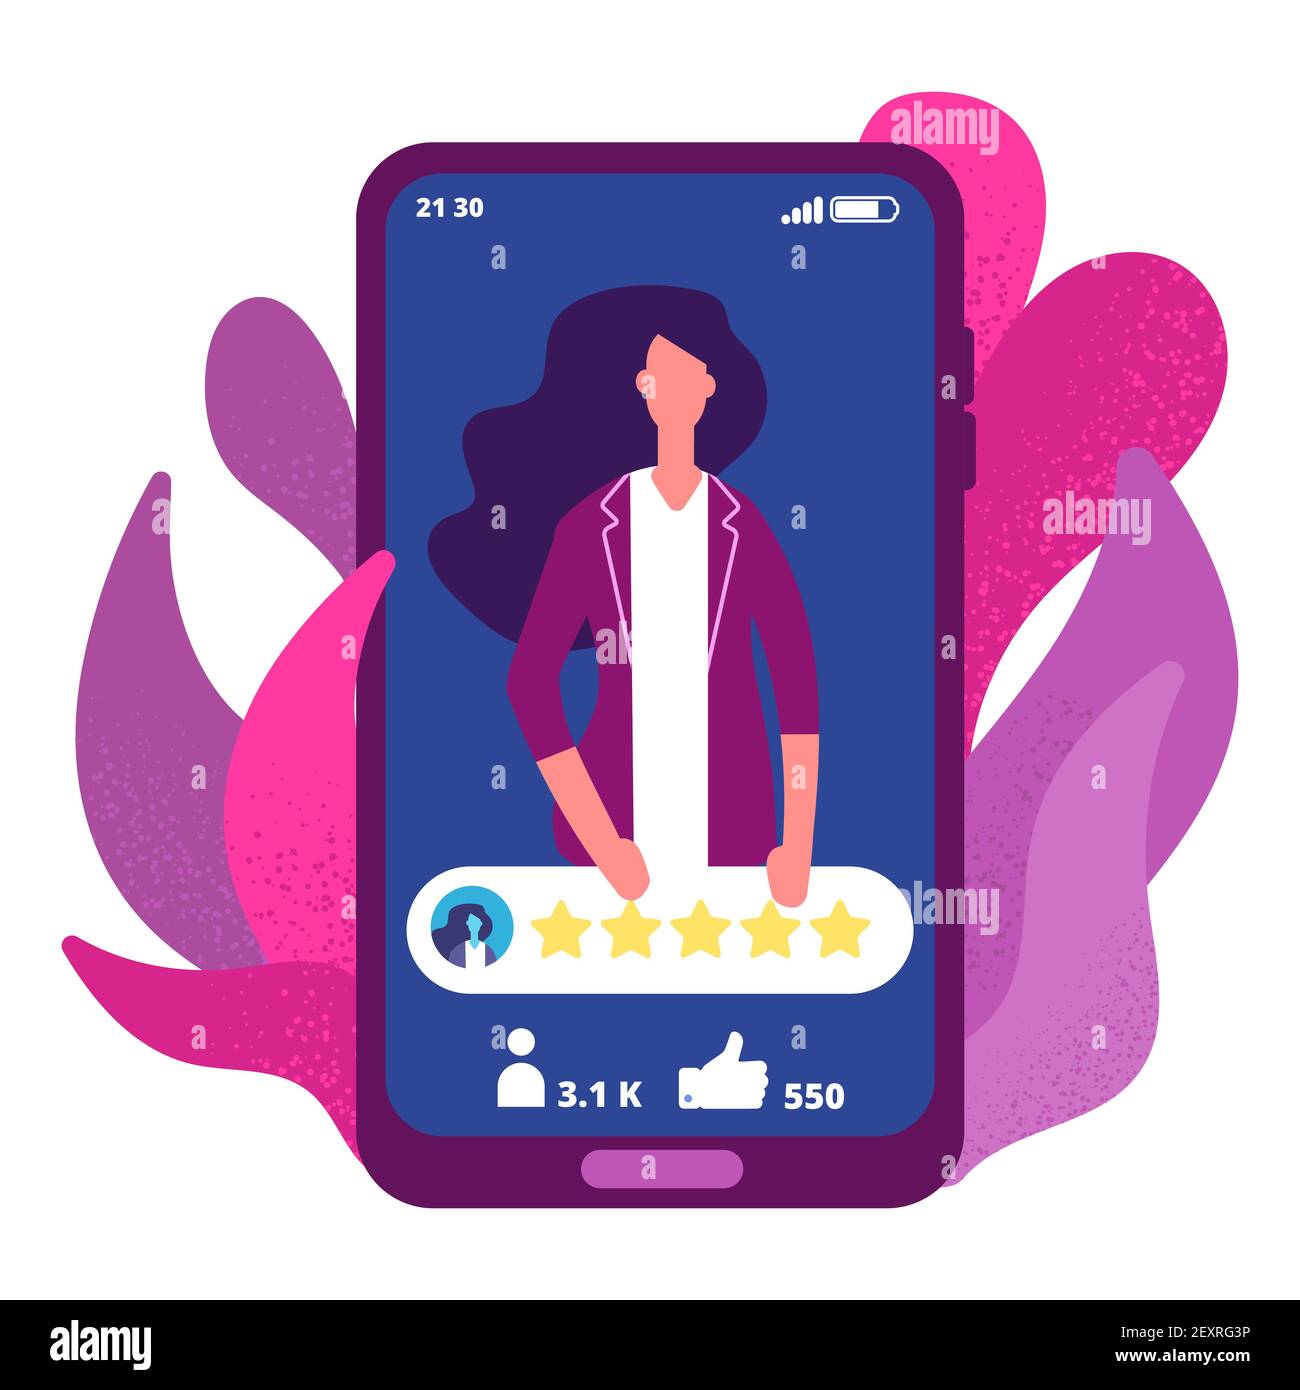 5 Sterne. Frau haben hohe Bewertung Online-App Vektor-Konzept. Illustration Feedback fünf Sterne, Bewertung Online-Person Stock Vektor